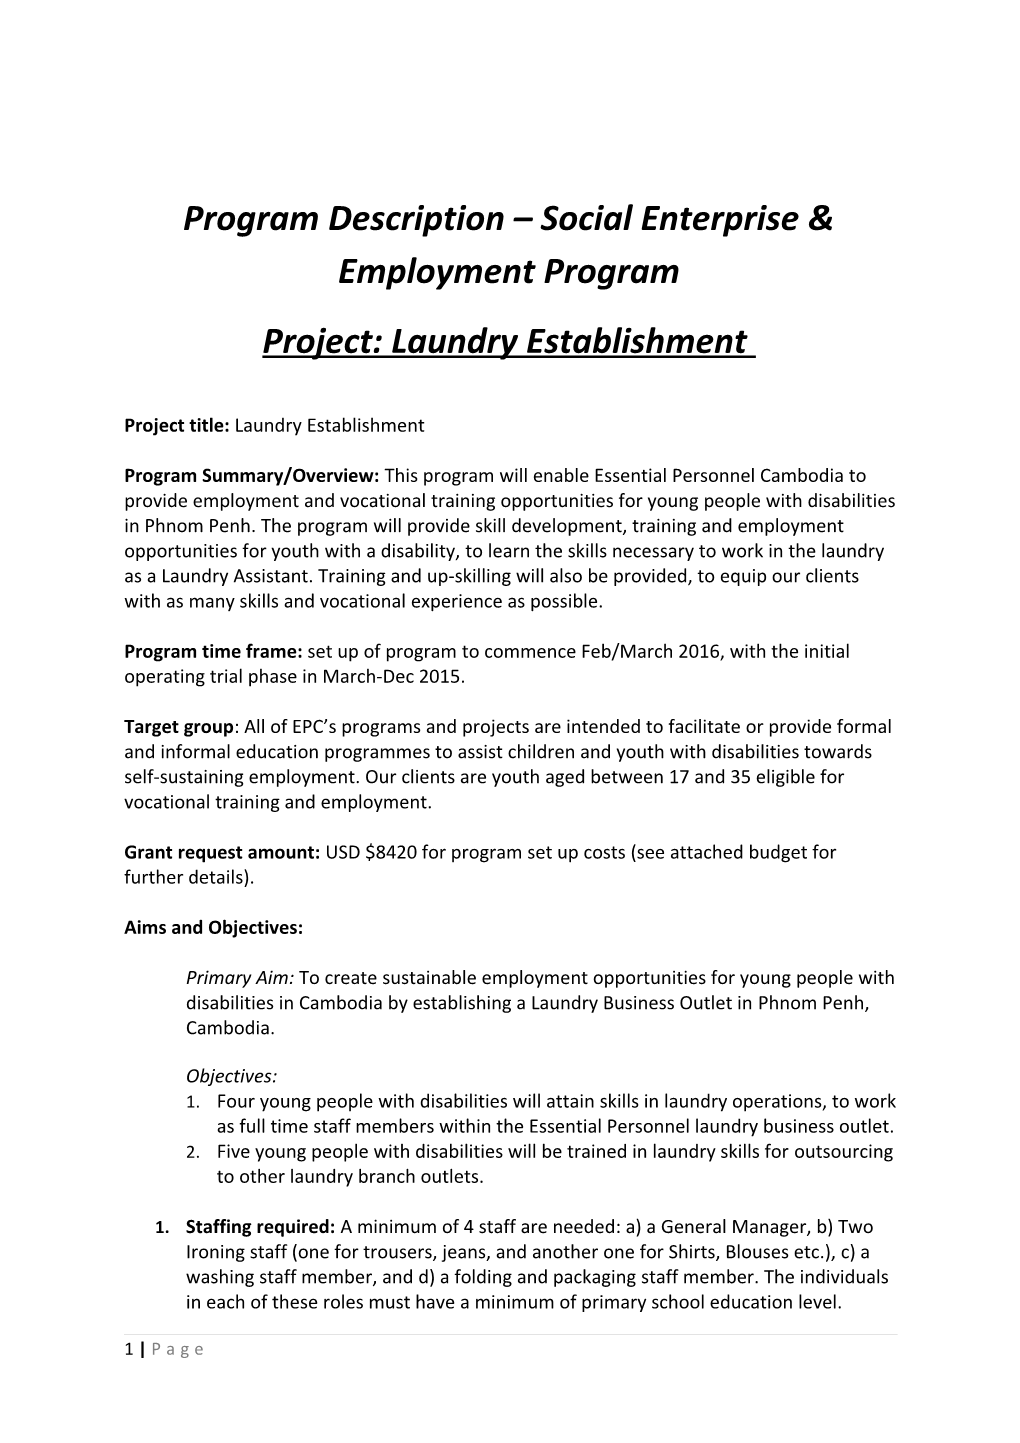 Program Description Social Enterprise & Employment Program